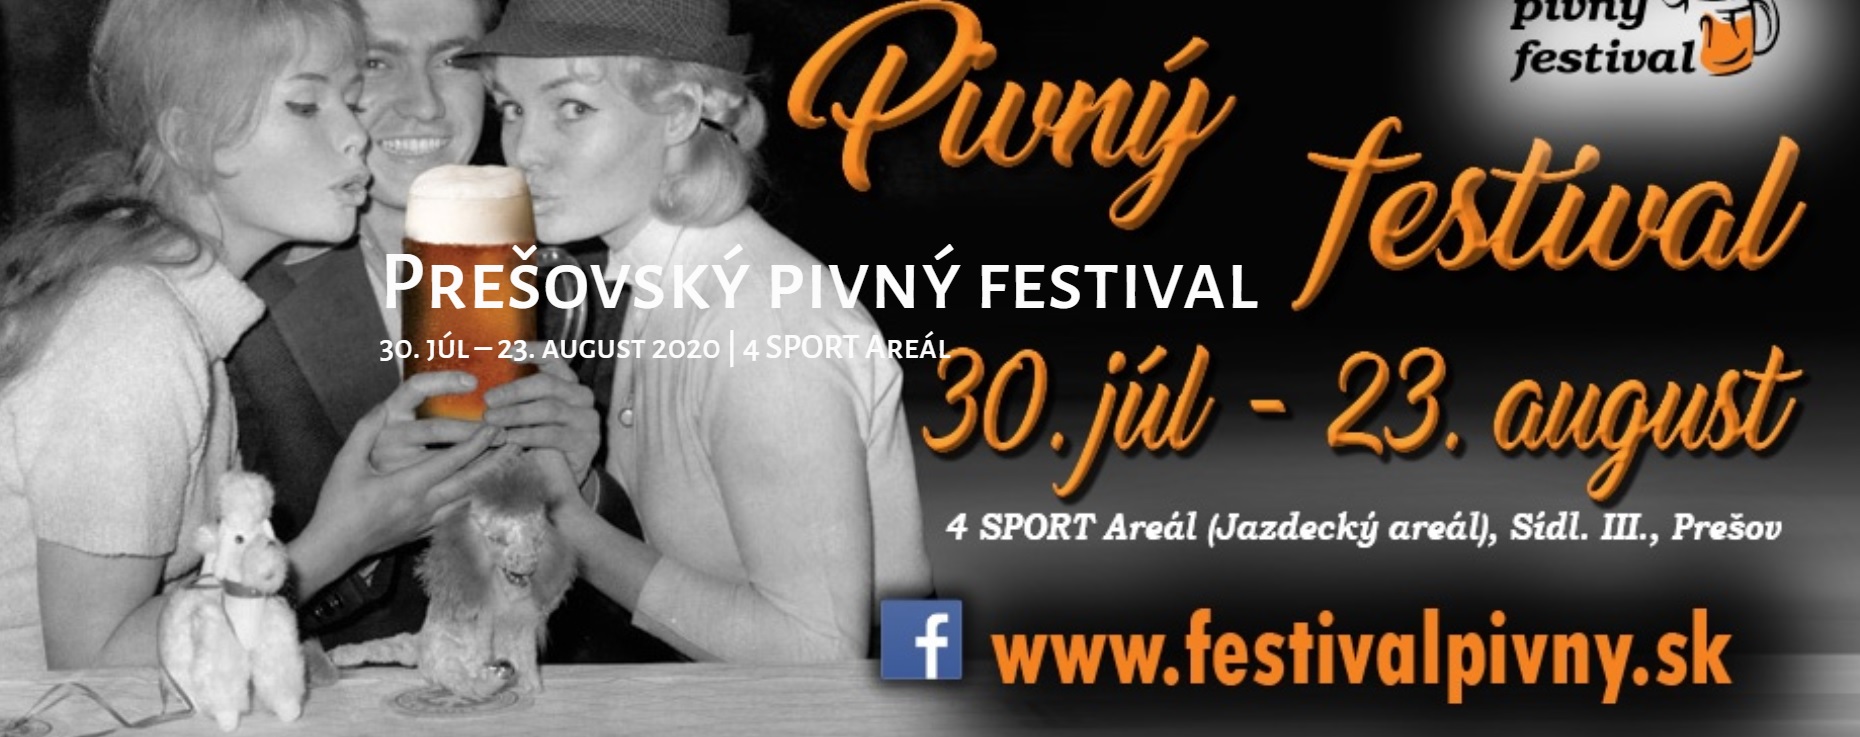 NOV - - - Preovsk pivn festival 2020 - 10. ronk